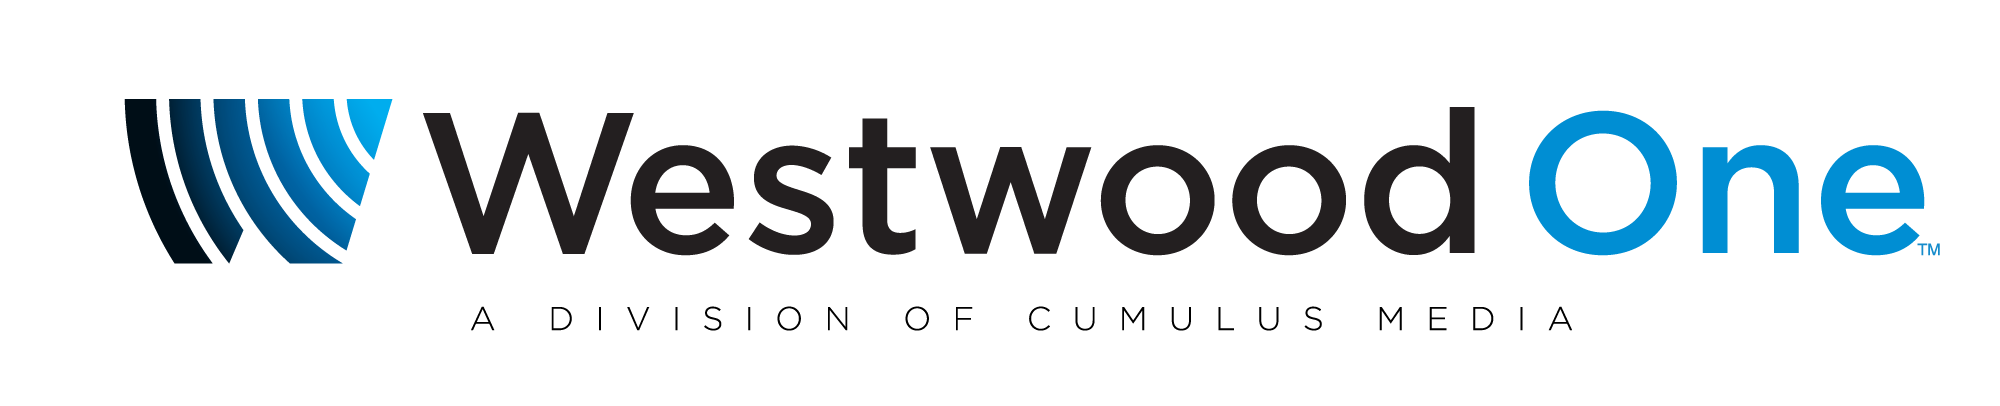 Westwood One logo